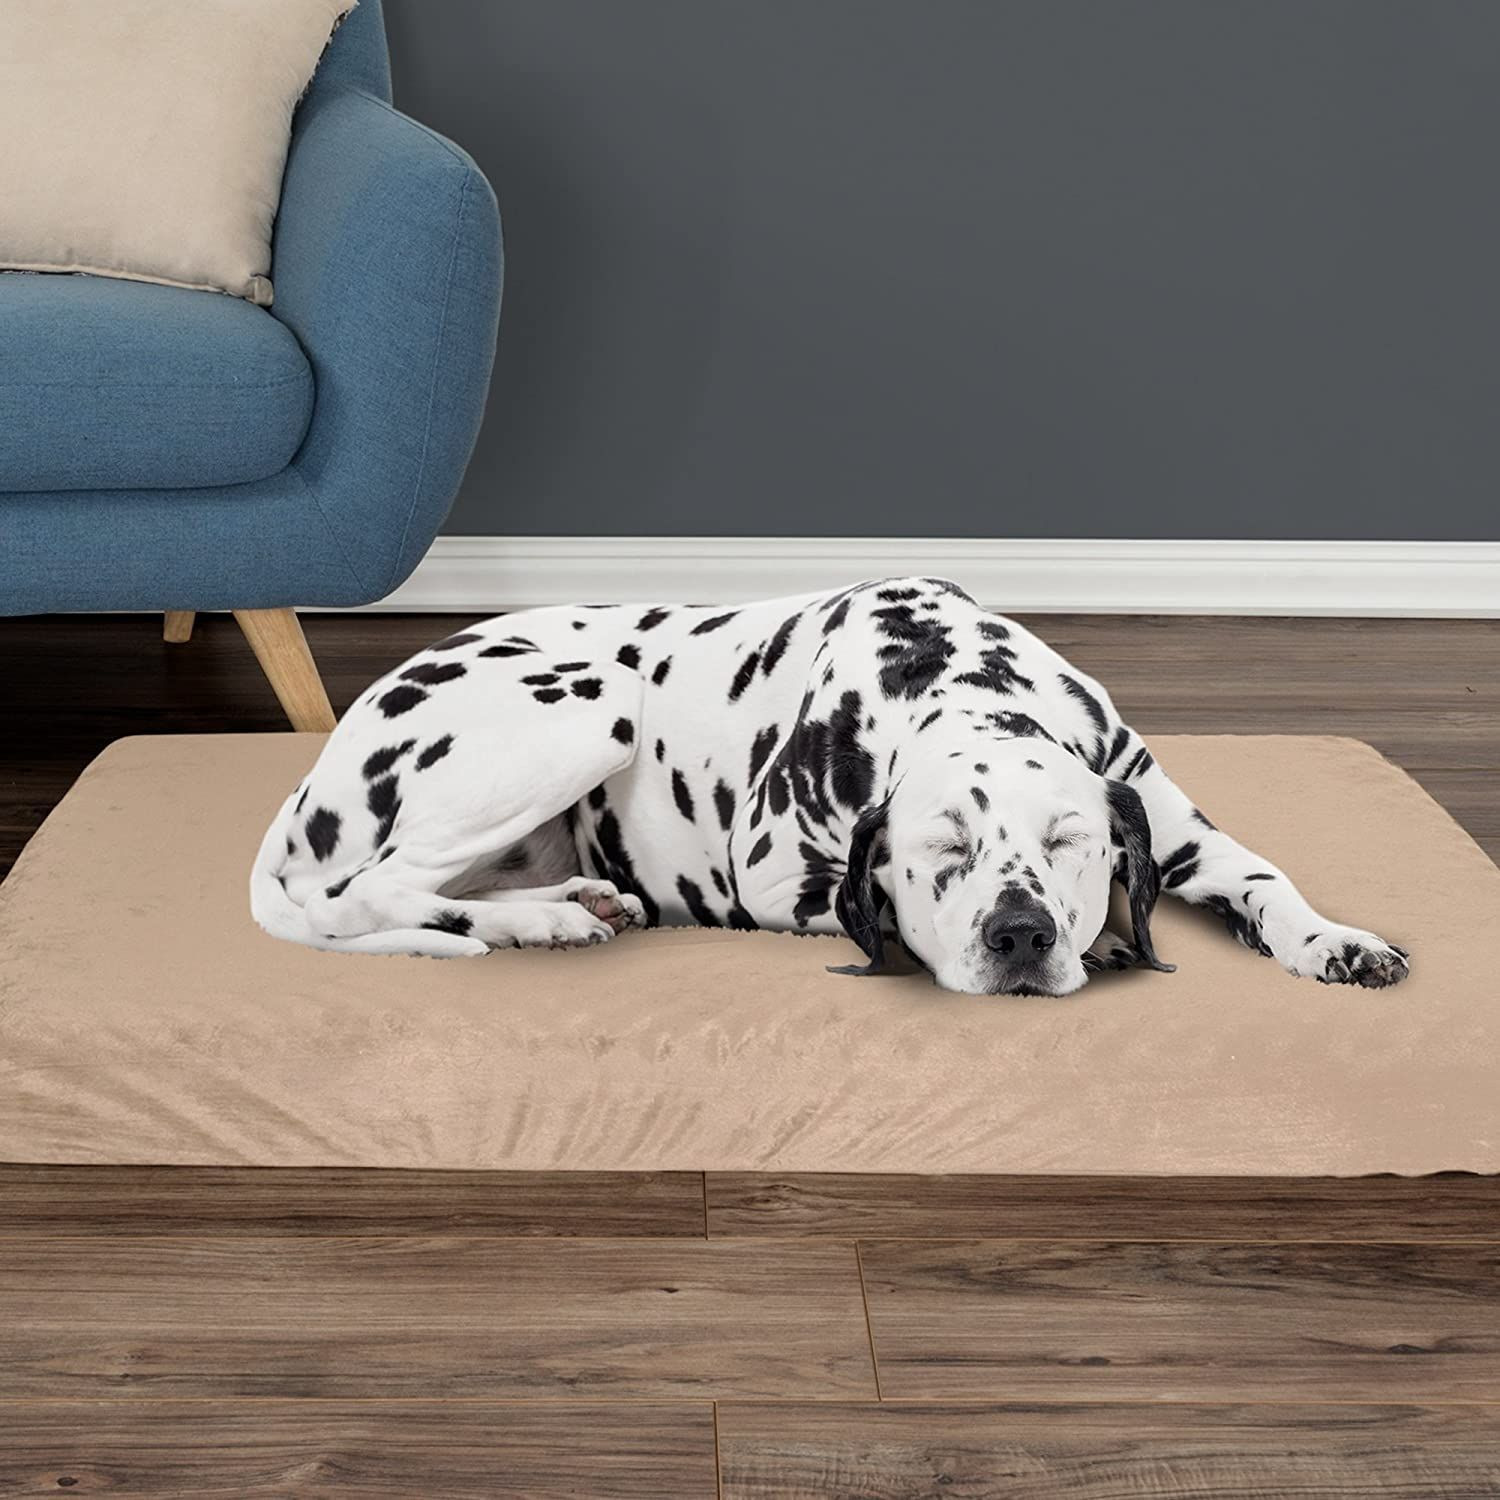 PETMAKER Orthopedic Dog Bed – 2-Layer Memory Foam 46" x 27", Tan 